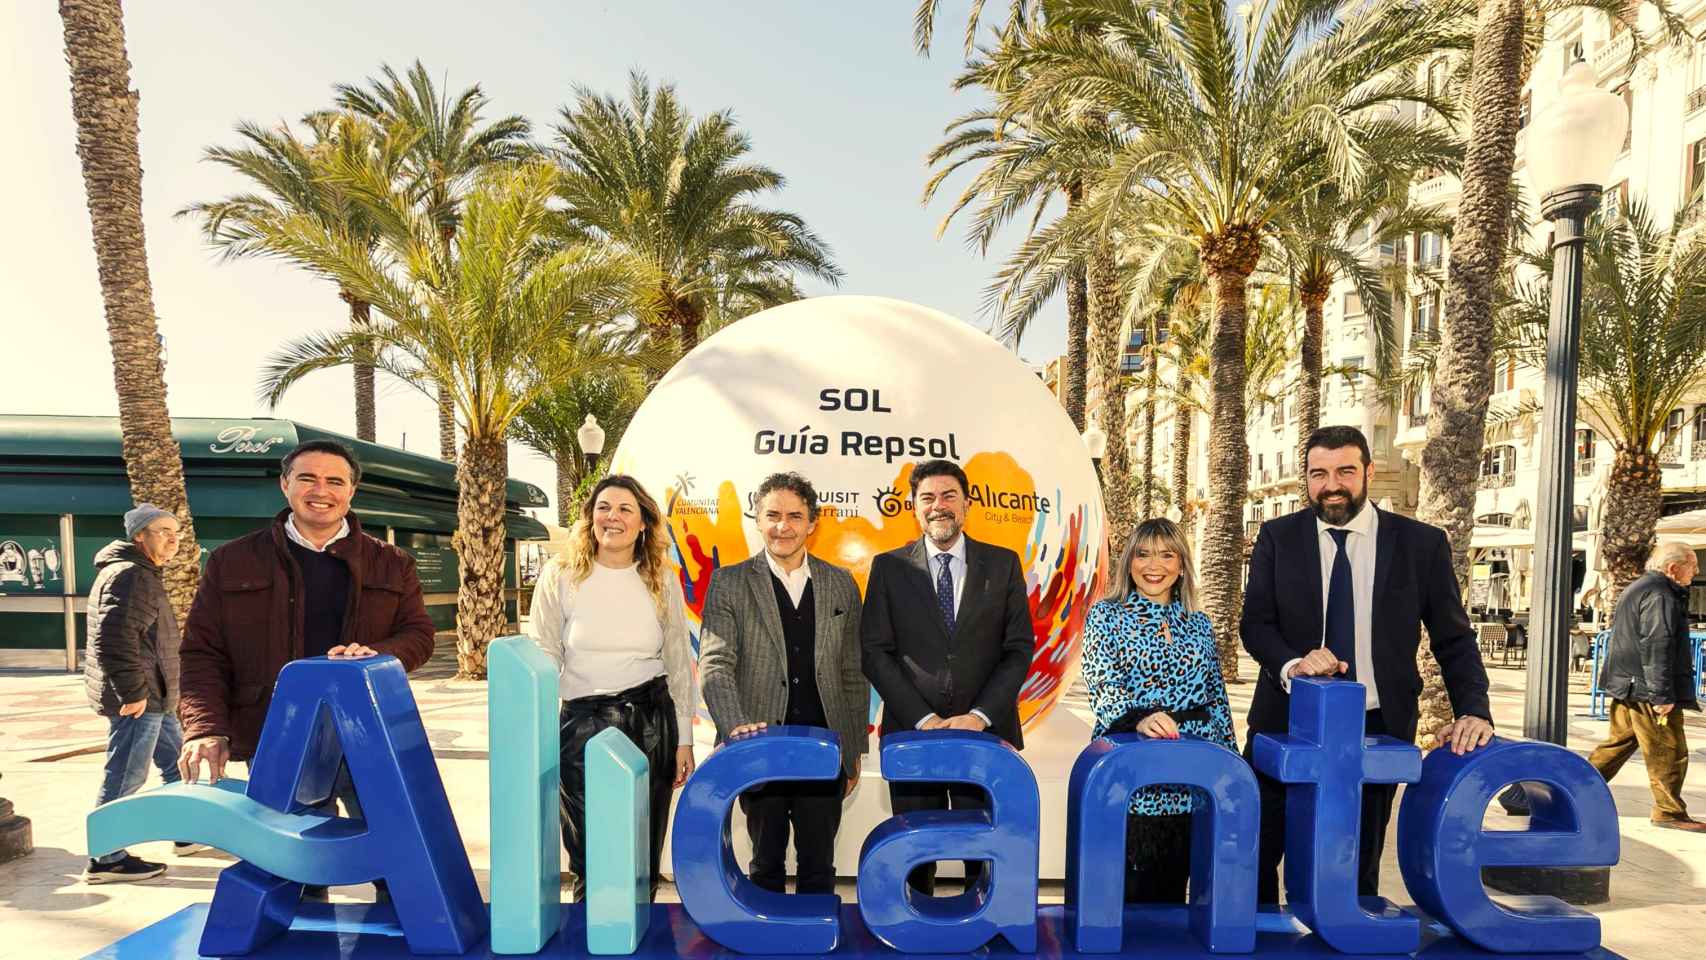 Presentación de las actividades en Alicante de los Soles Repsol.